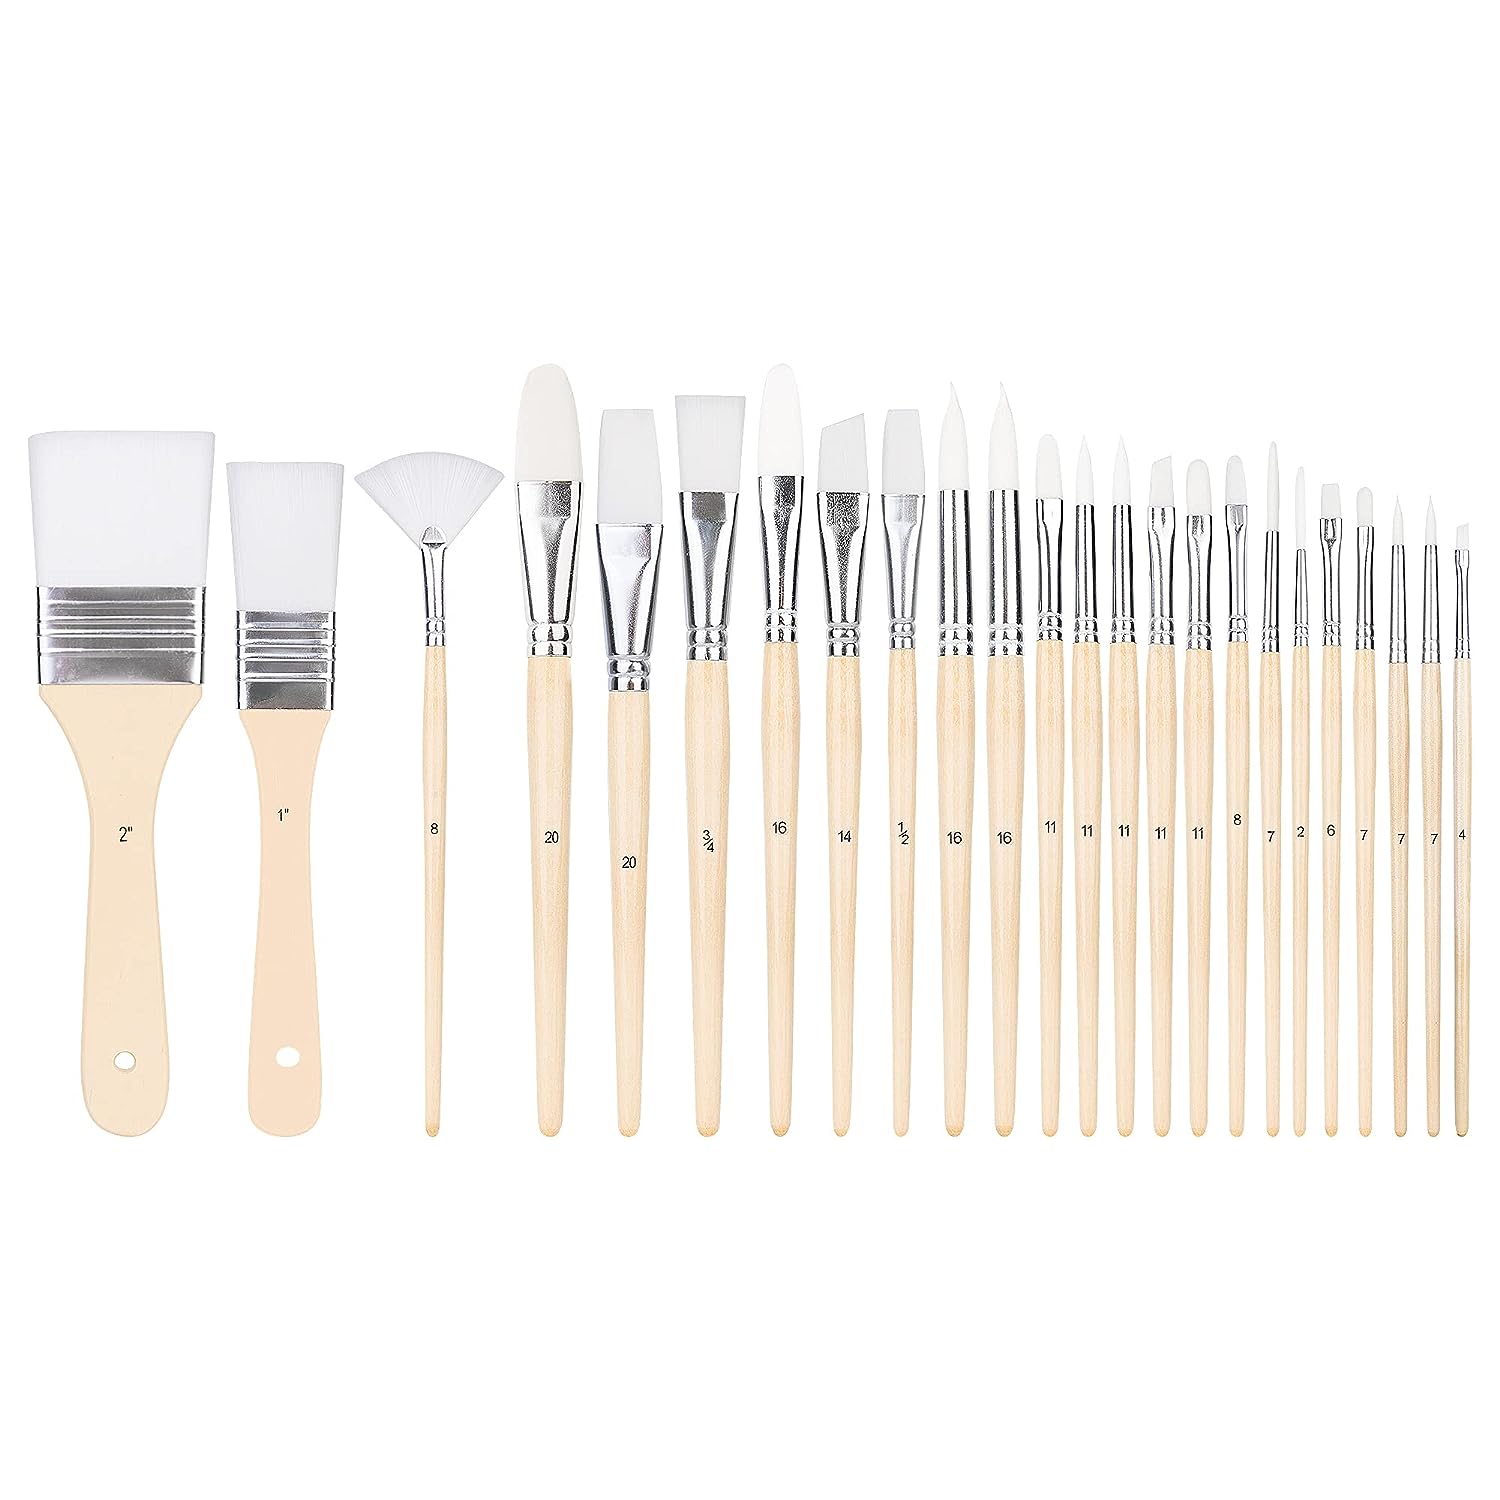 Amazon Basics Multi-shaped Nylon Paint Brushes for for [...]